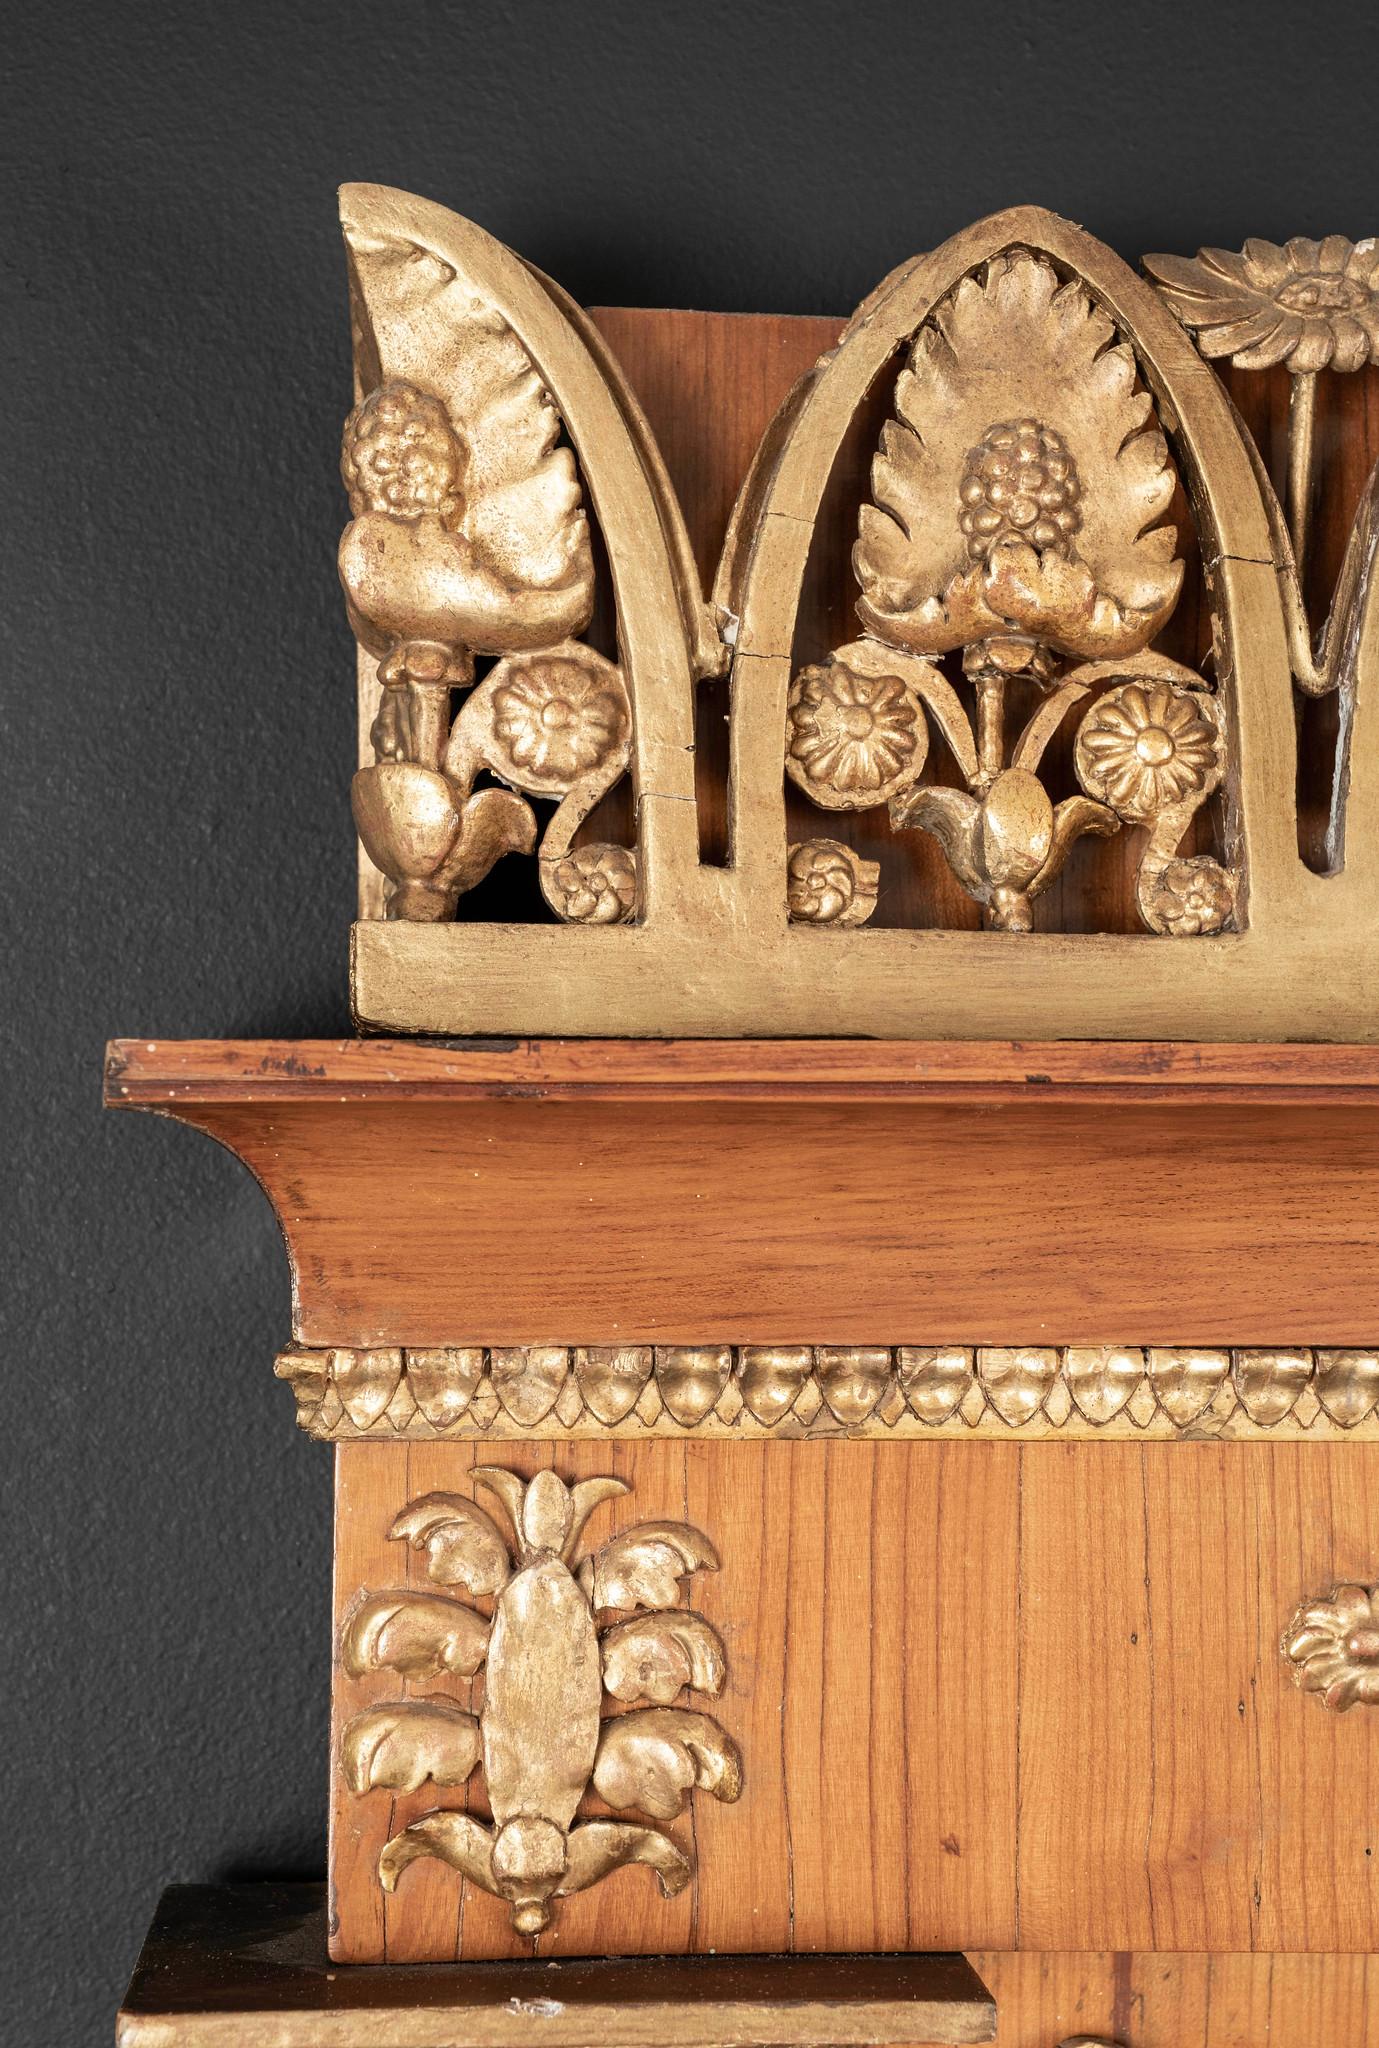 Miroir en bois satiné de style néo-empire français de grande époque, orné de motifs floraux néoclassiques en bois doré, de guirlandes, de couronnes, d'acanthes et de colonnes cannelées. Très bon état de conservation.